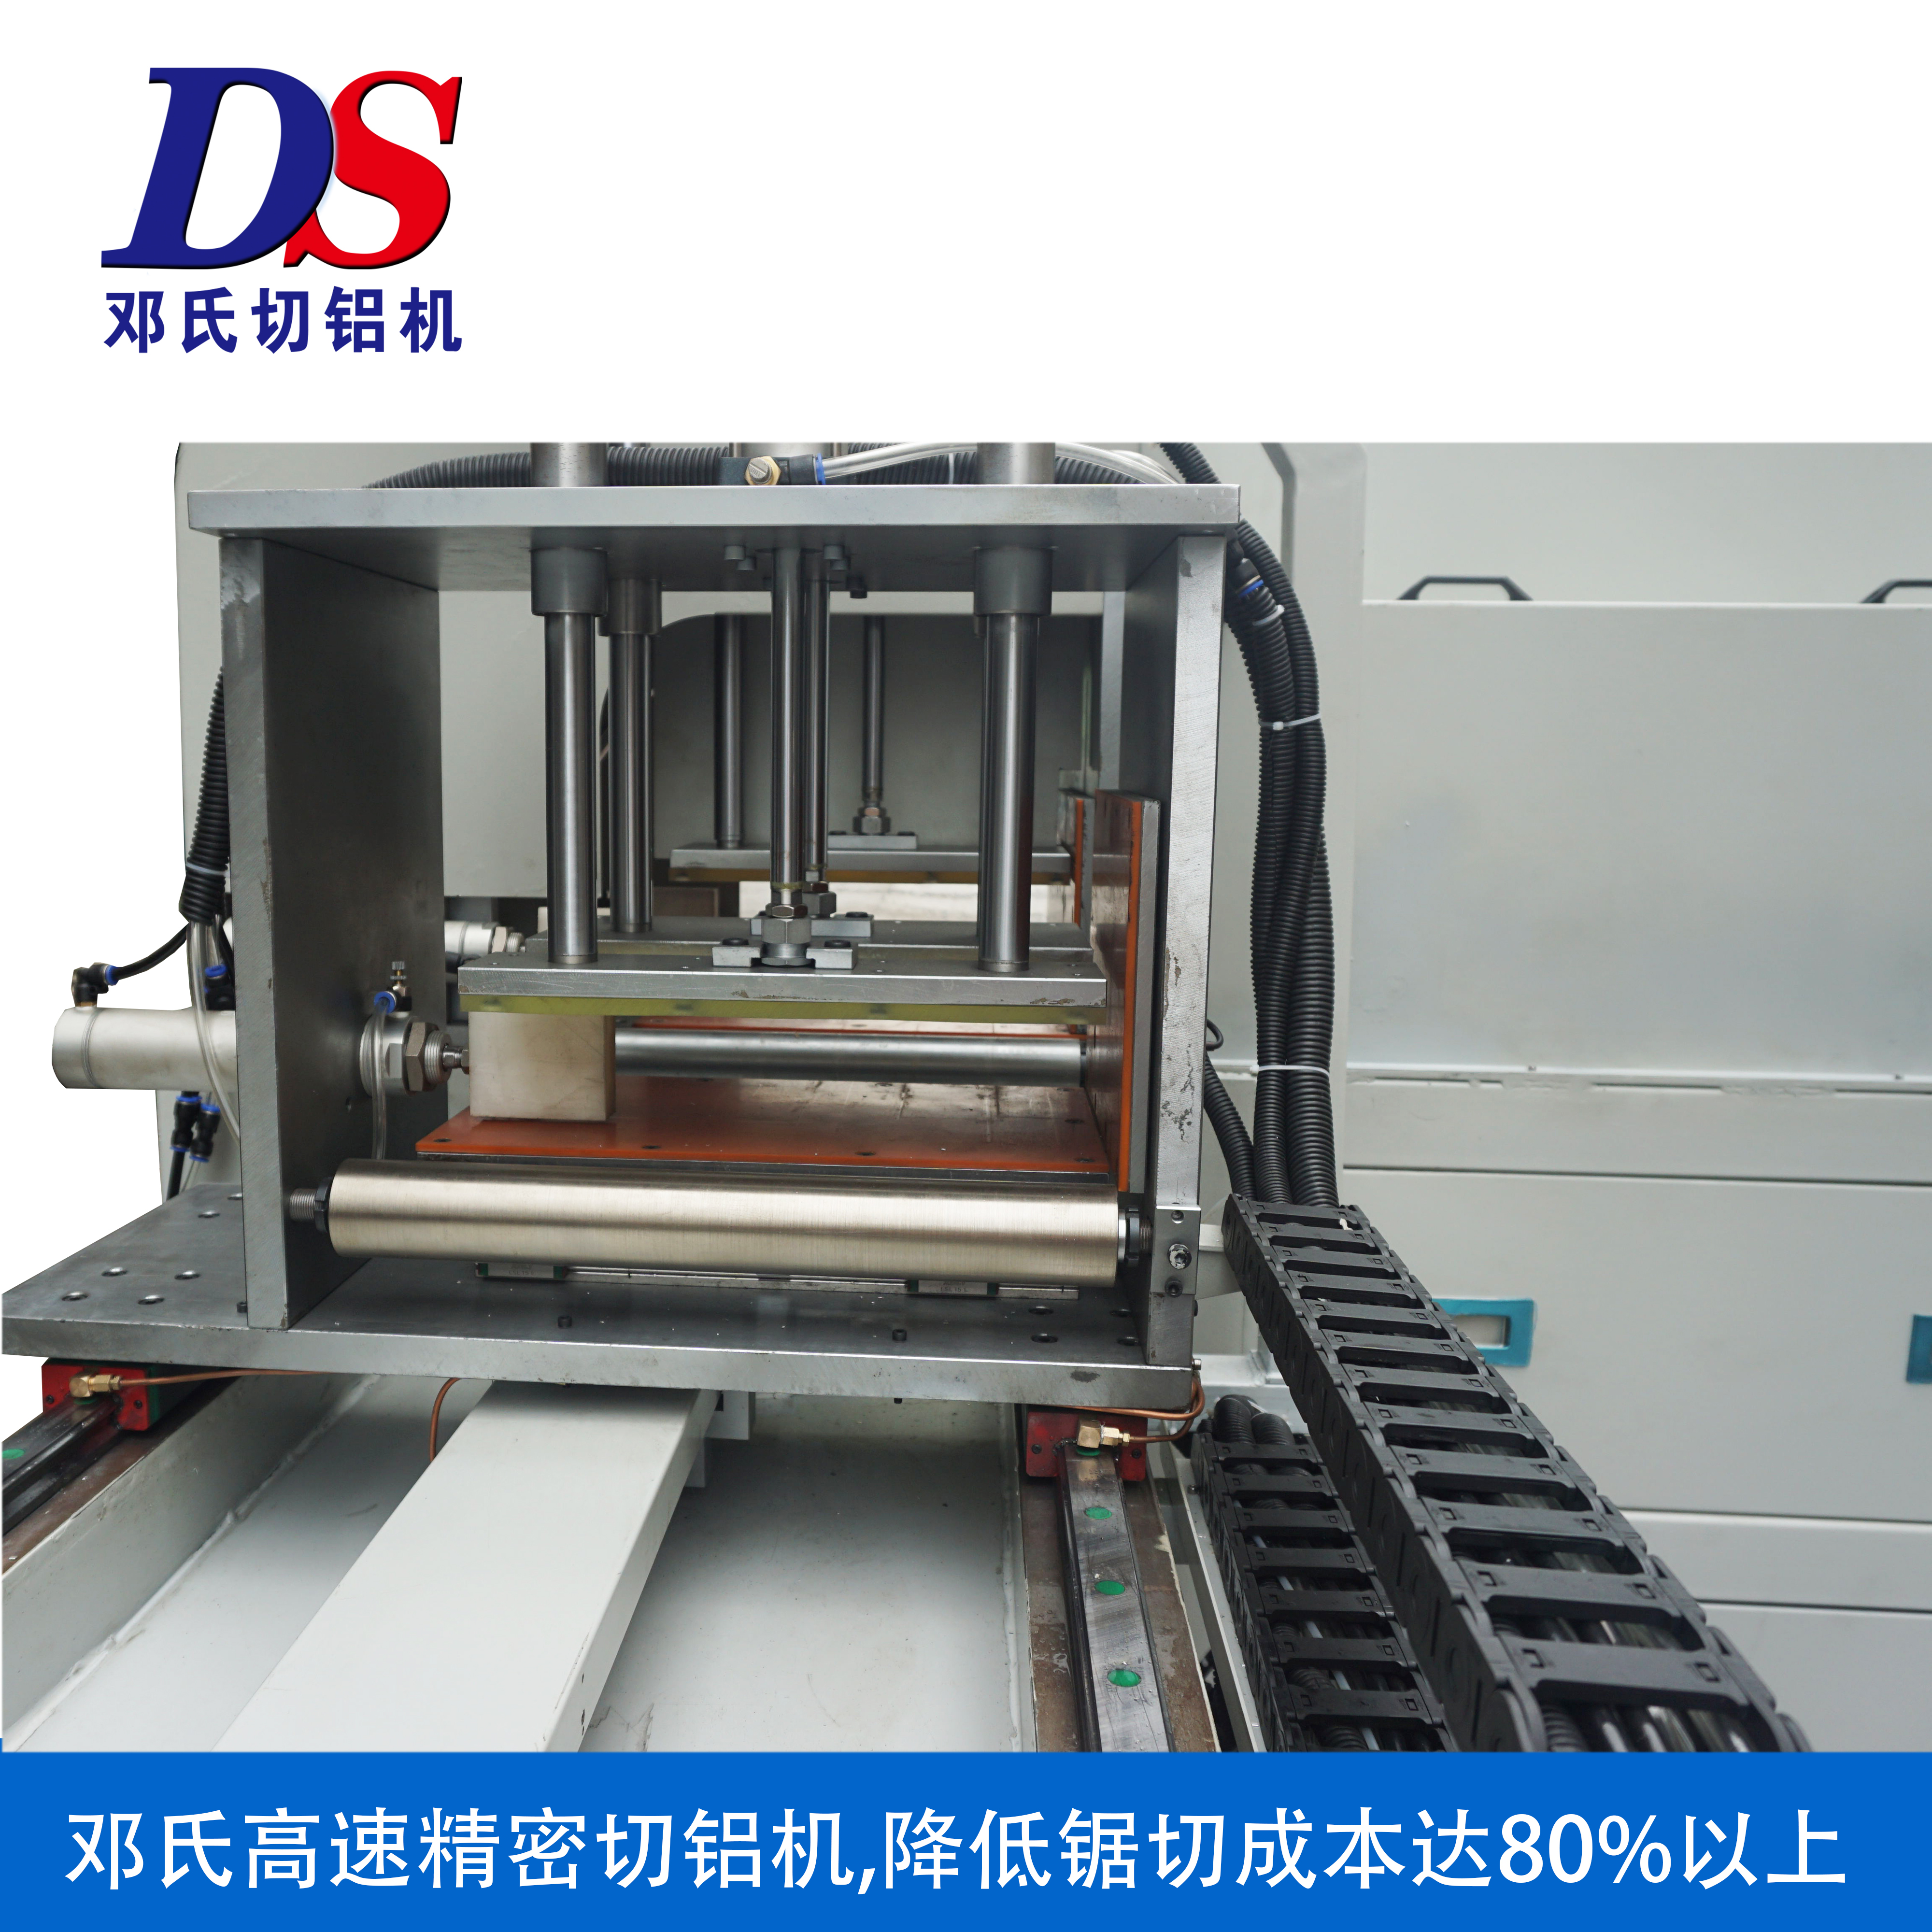 ds-a800大型铝合金送料切割机批发定制